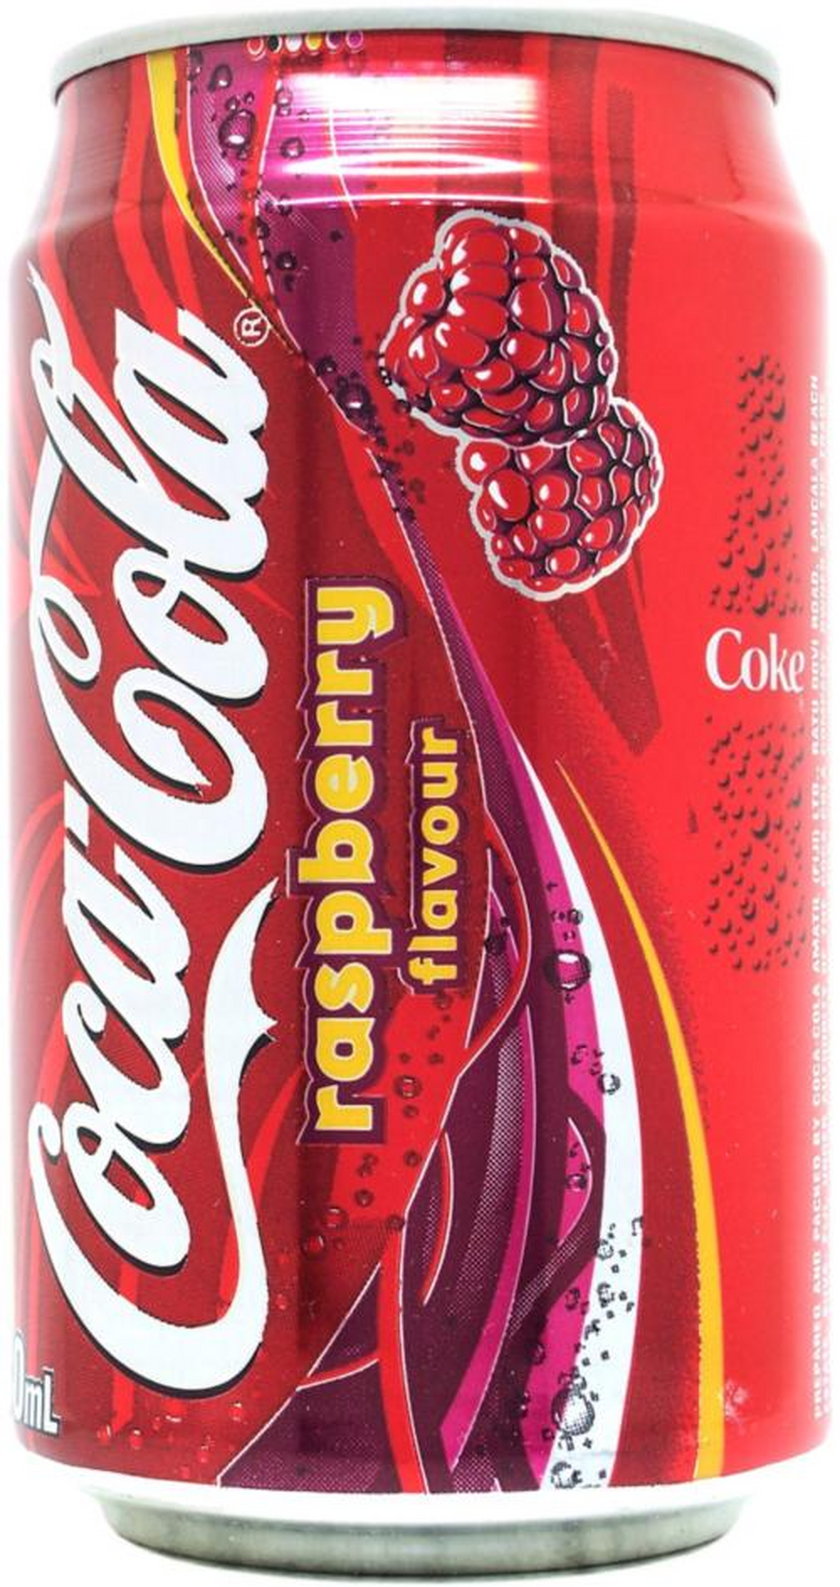 Coca-cola raspberry